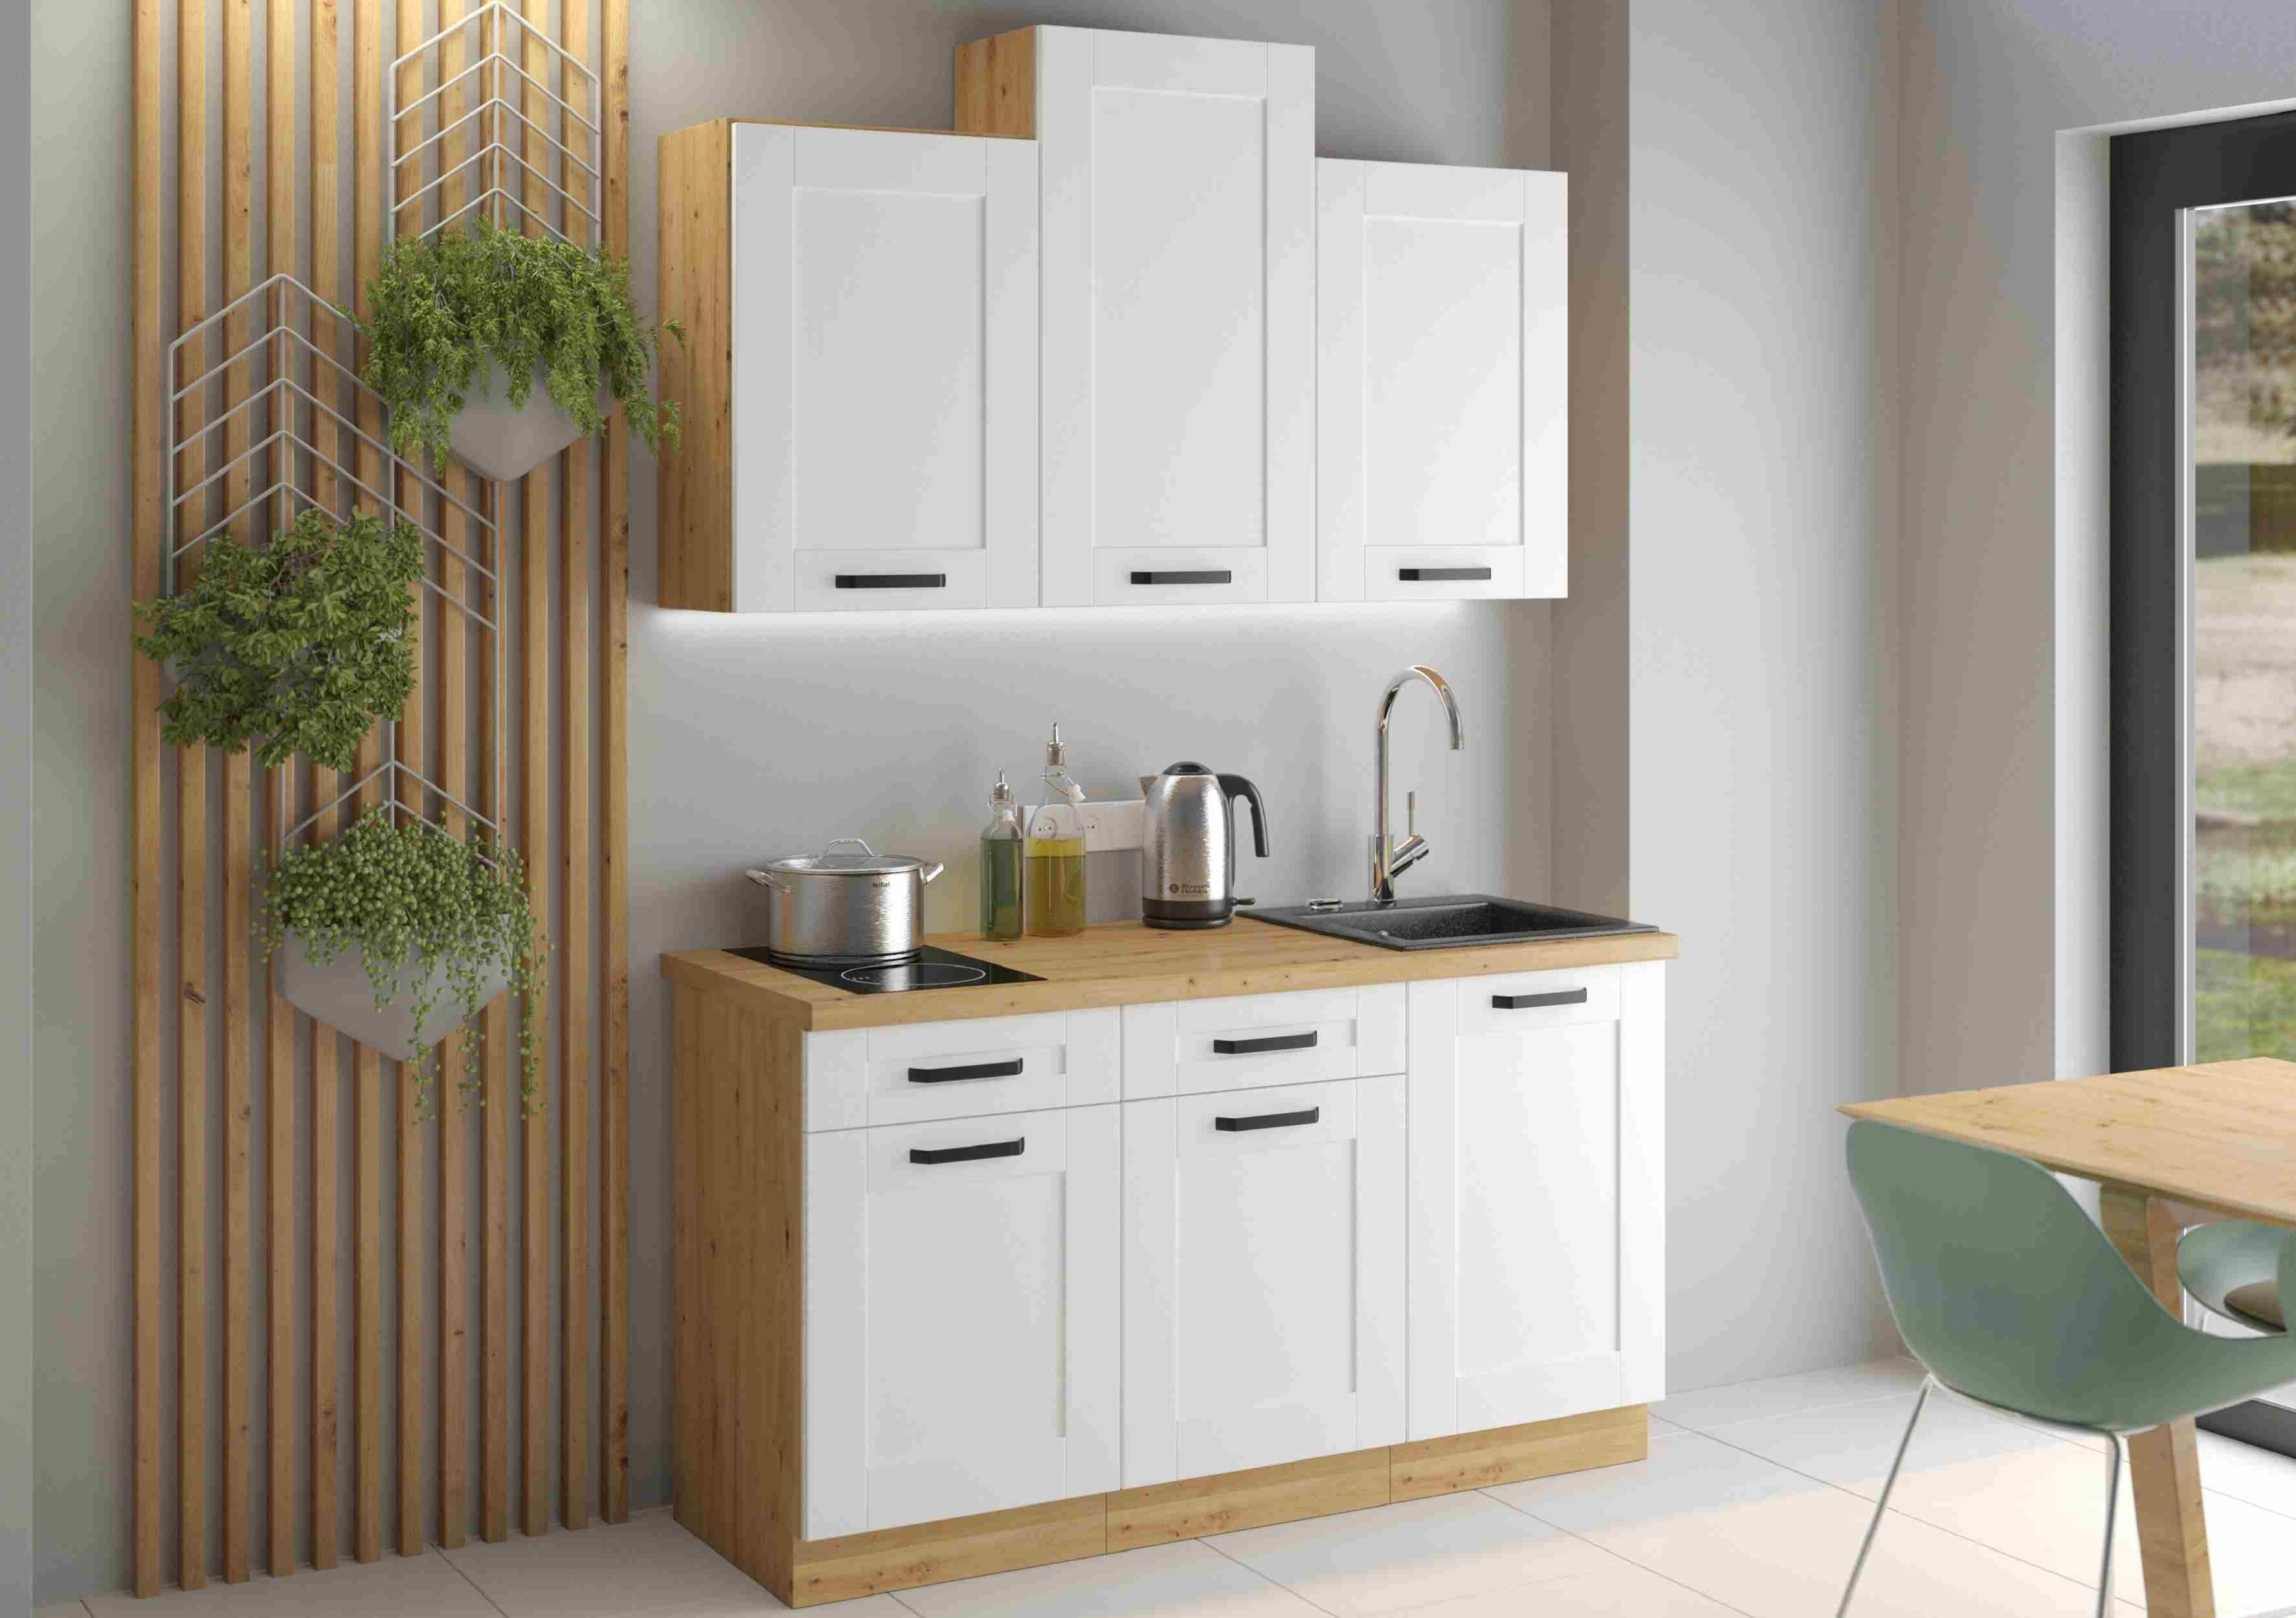 Furnix Küchenzeile Isladora 150 cm Küchenmöbel-Set mit Hängeschränken in 5 Farben, Maße 150x85,8x60 cm, Landhaus Design & Funktionalität